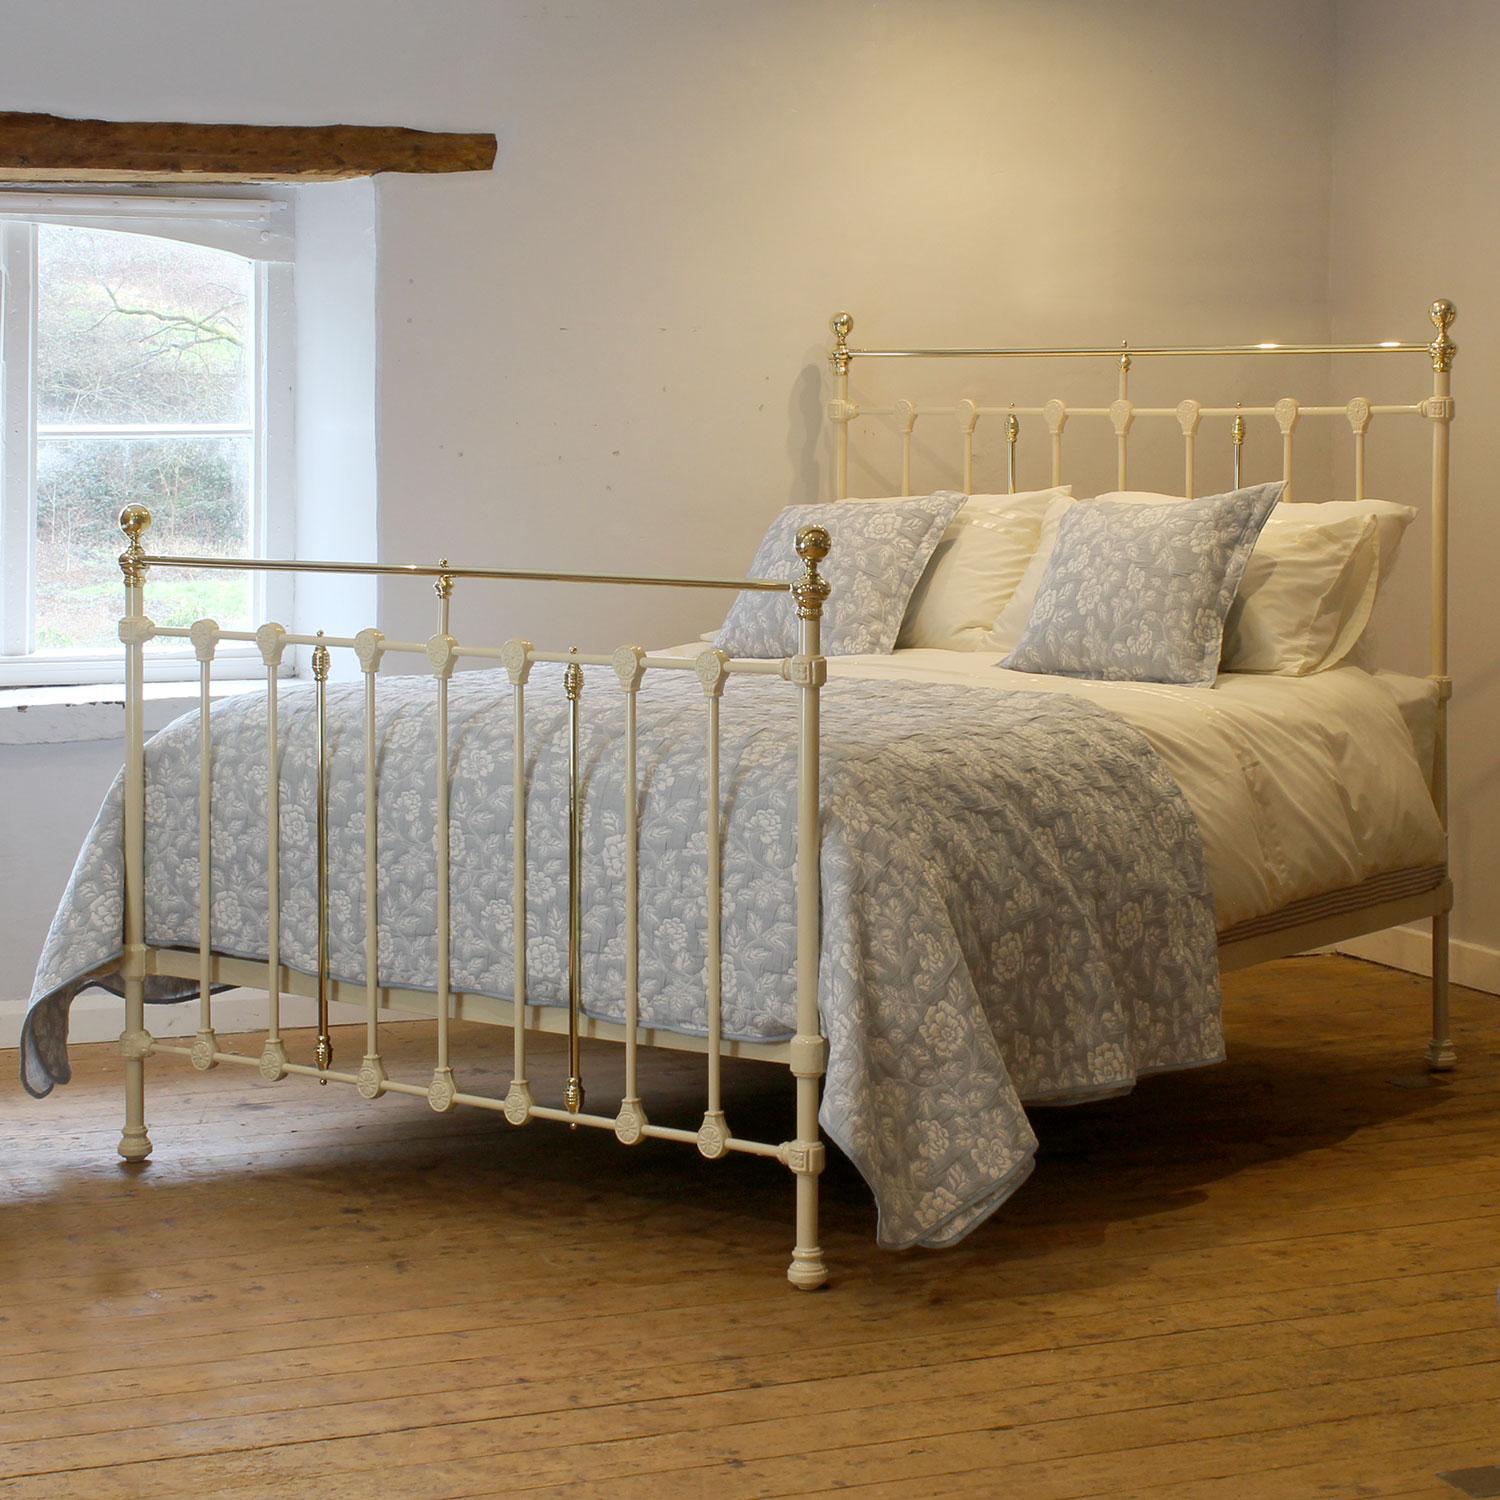 Ein attraktives antikes Bett aus Gusseisen in cremefarbener Farbe mit geraden Messinggeländern und dekorativen Gussteilen, die Sonnenmotive darstellen.

Dieses Bett kann mit einem UK-King-Size- oder US-Queen-Size-Matratzen-Set (5ft, 60in oder 150cm